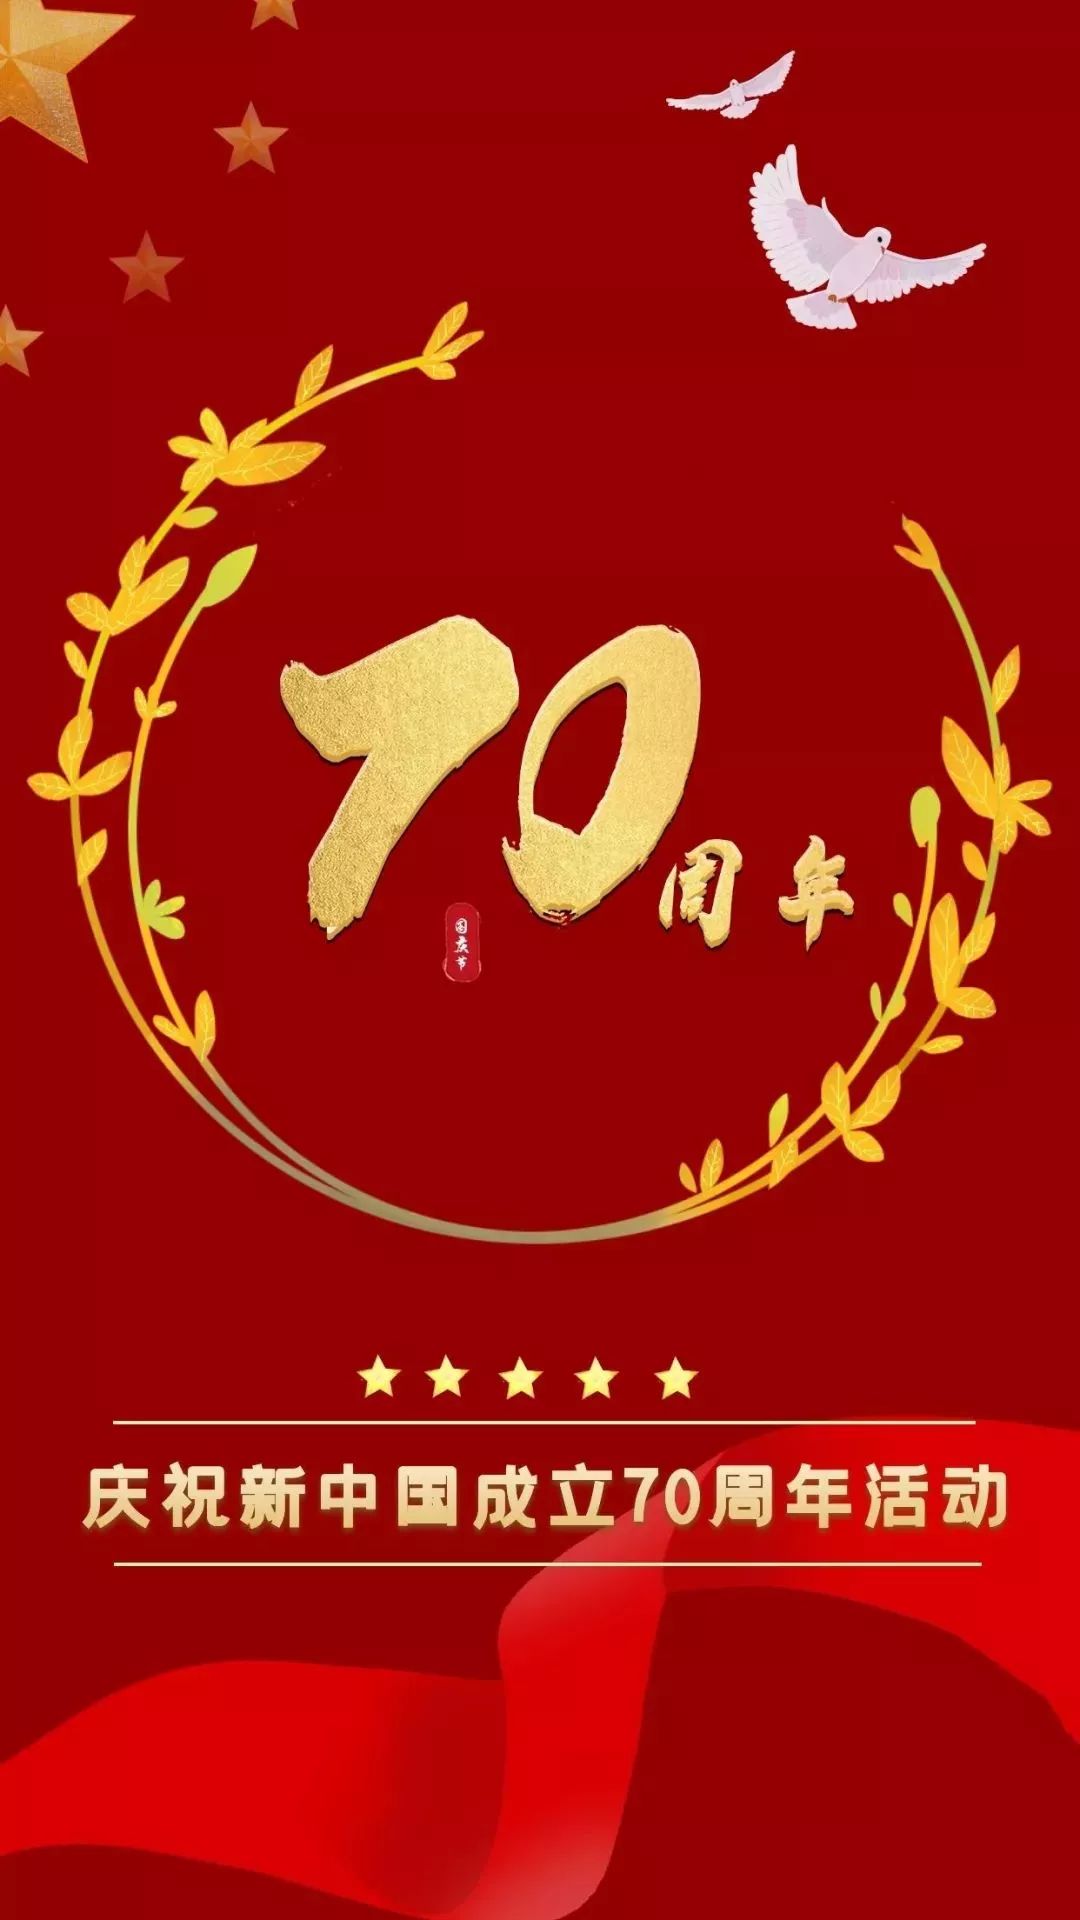 庆祝新中国成立70周年,70场活动齐聚台州!